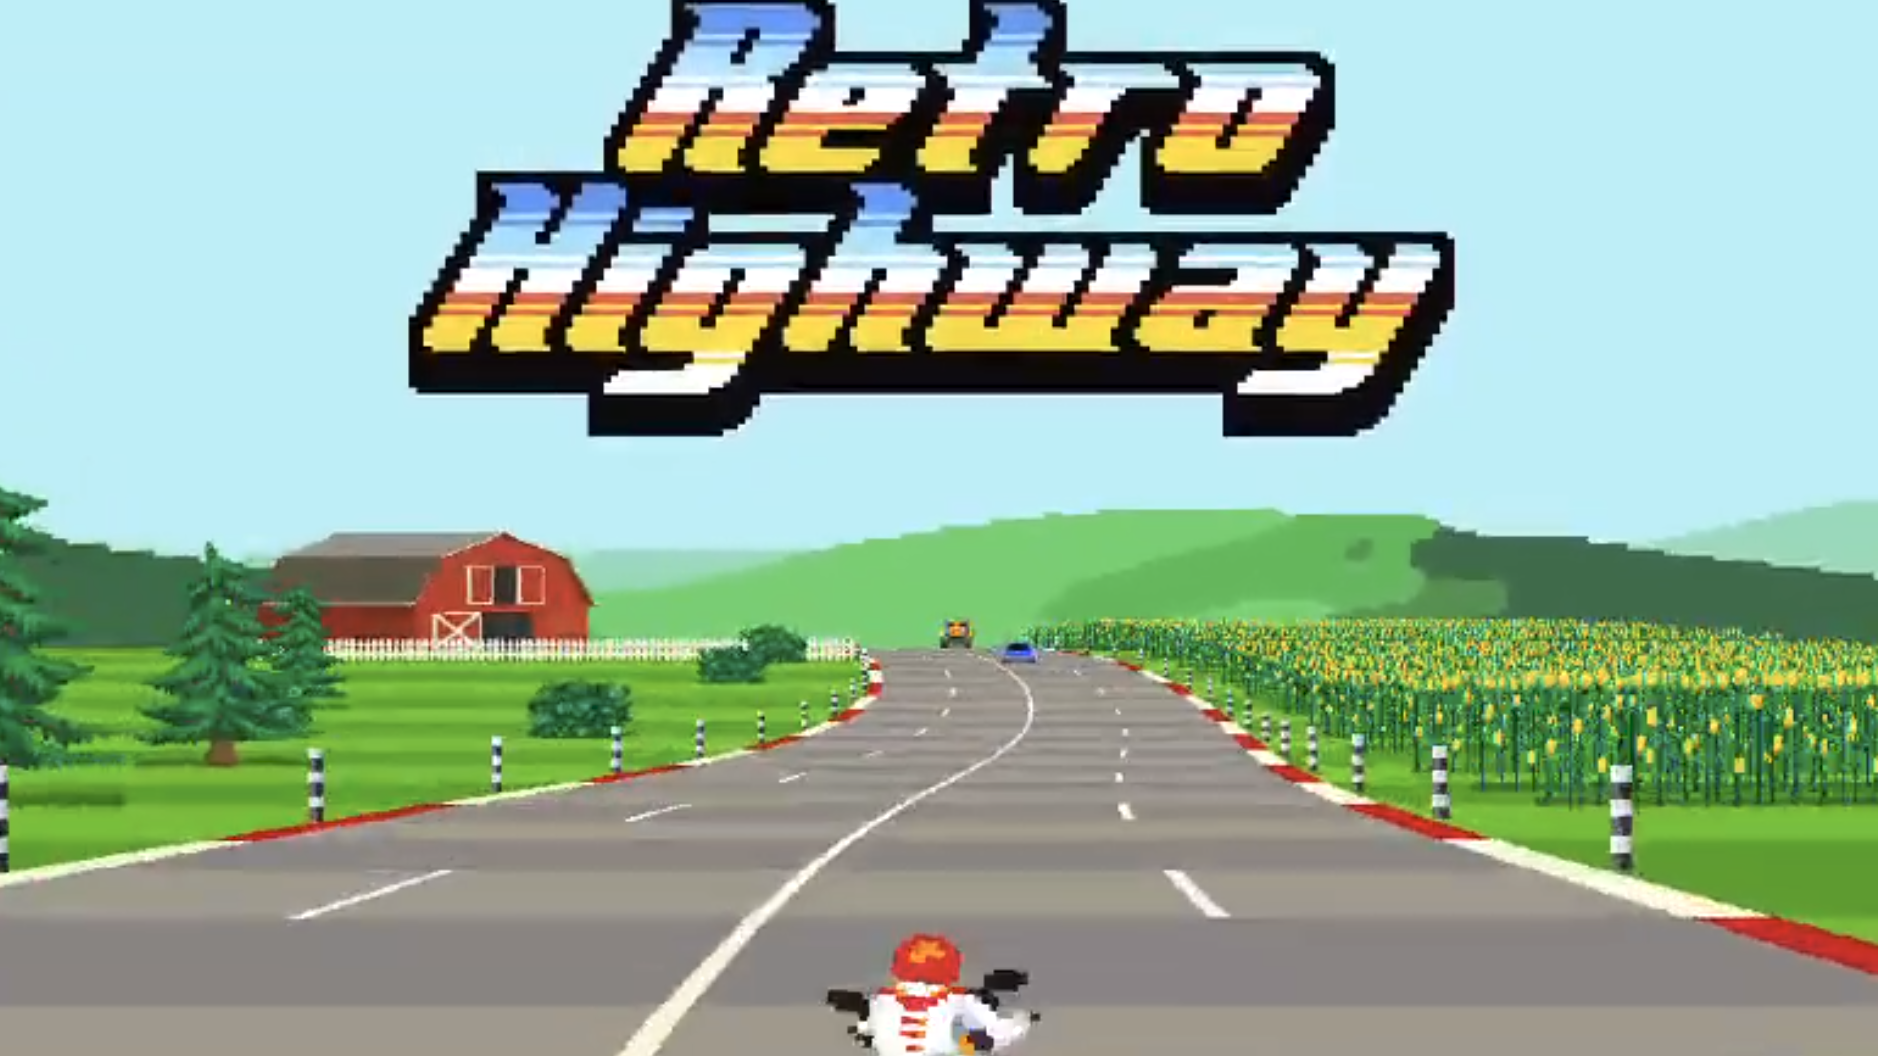 Retro Highway